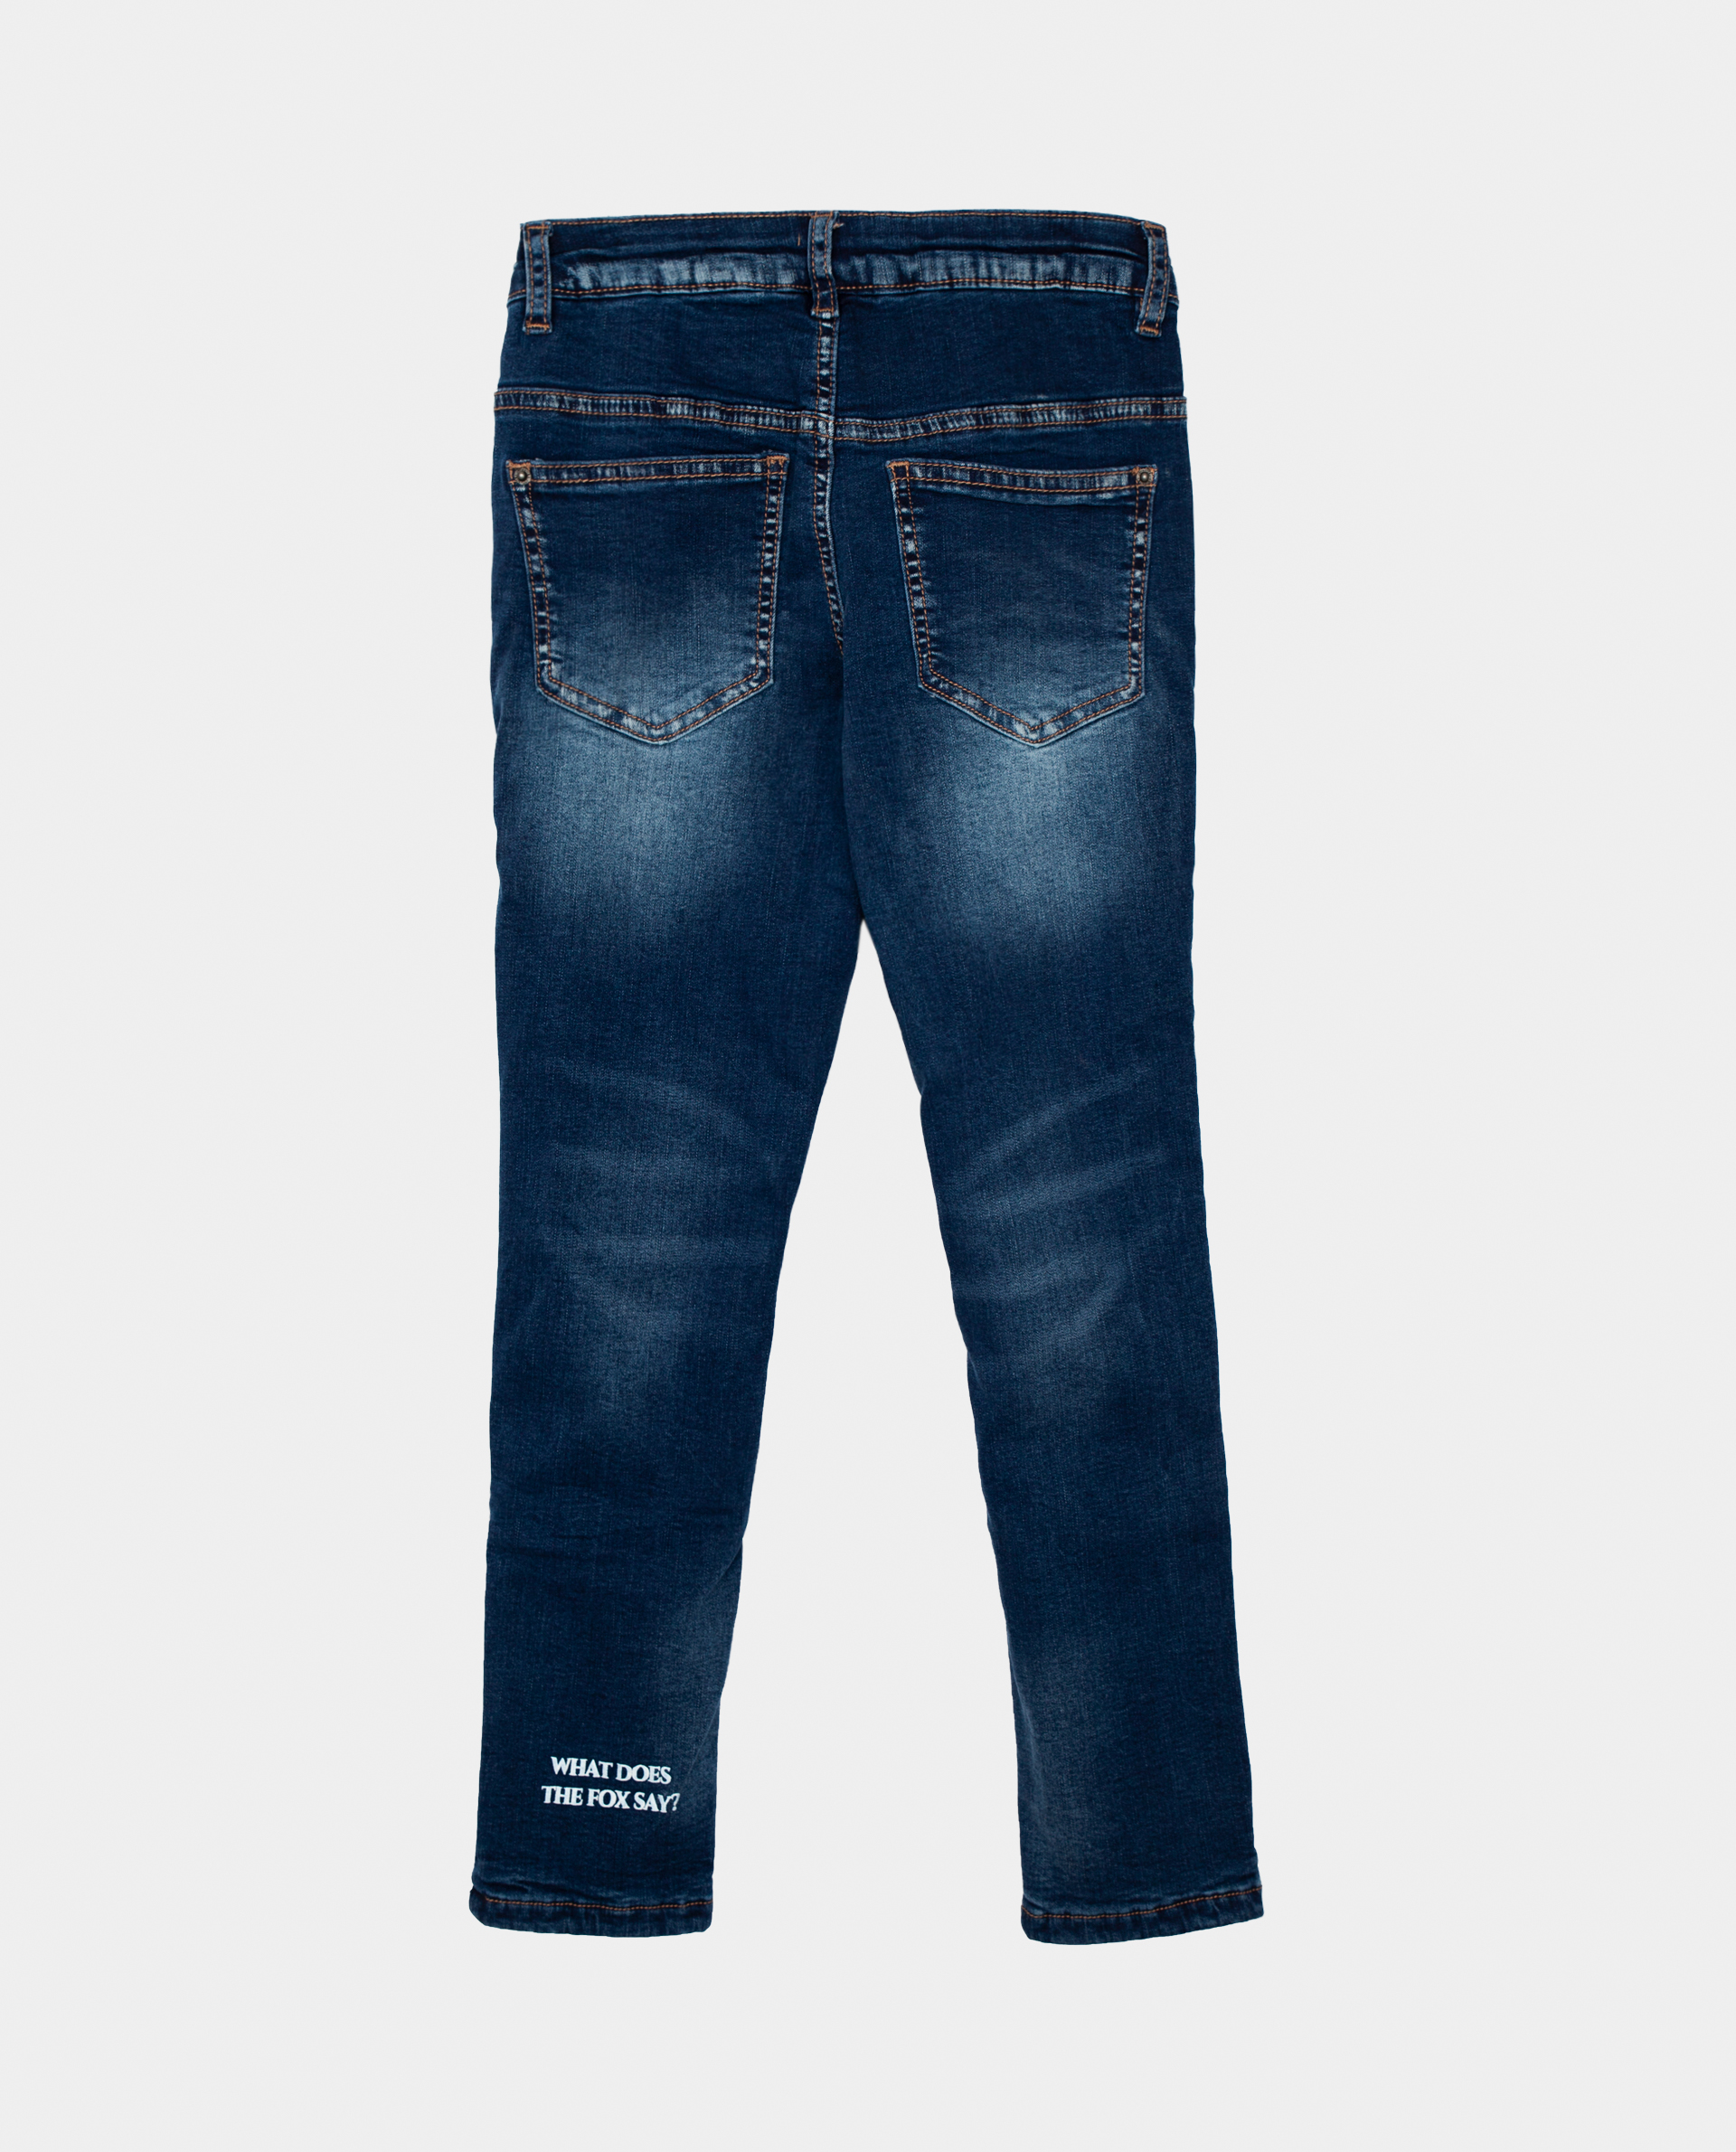 Голубые джинсы утепленные Gulliver 22002GMC6402, размер 98, цвет голубой regular fit / прямые - фото 2